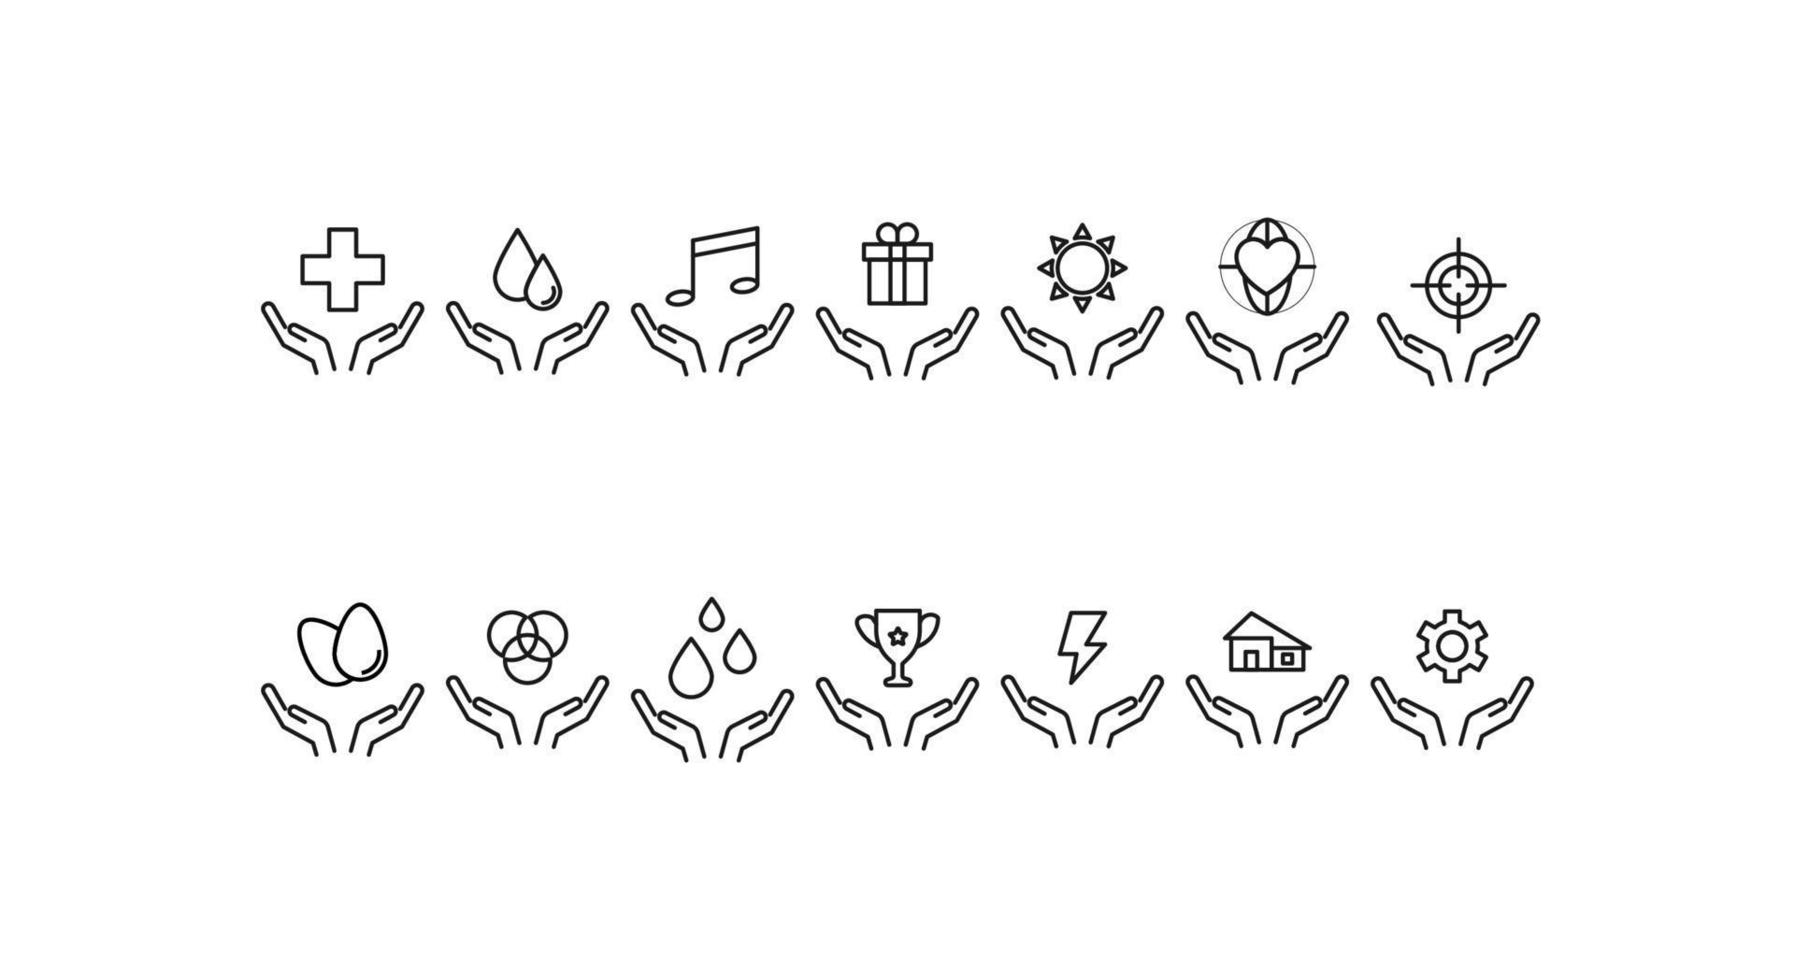 concept de charité et de philanthropie. symboles de contour vectoriels modernes dessinés avec une ligne mince. collection d'icônes de ligne. icônes de plus, gouttes, soleil, coeur, engrenage, oeufs, maison sur les mains ouvertes vecteur